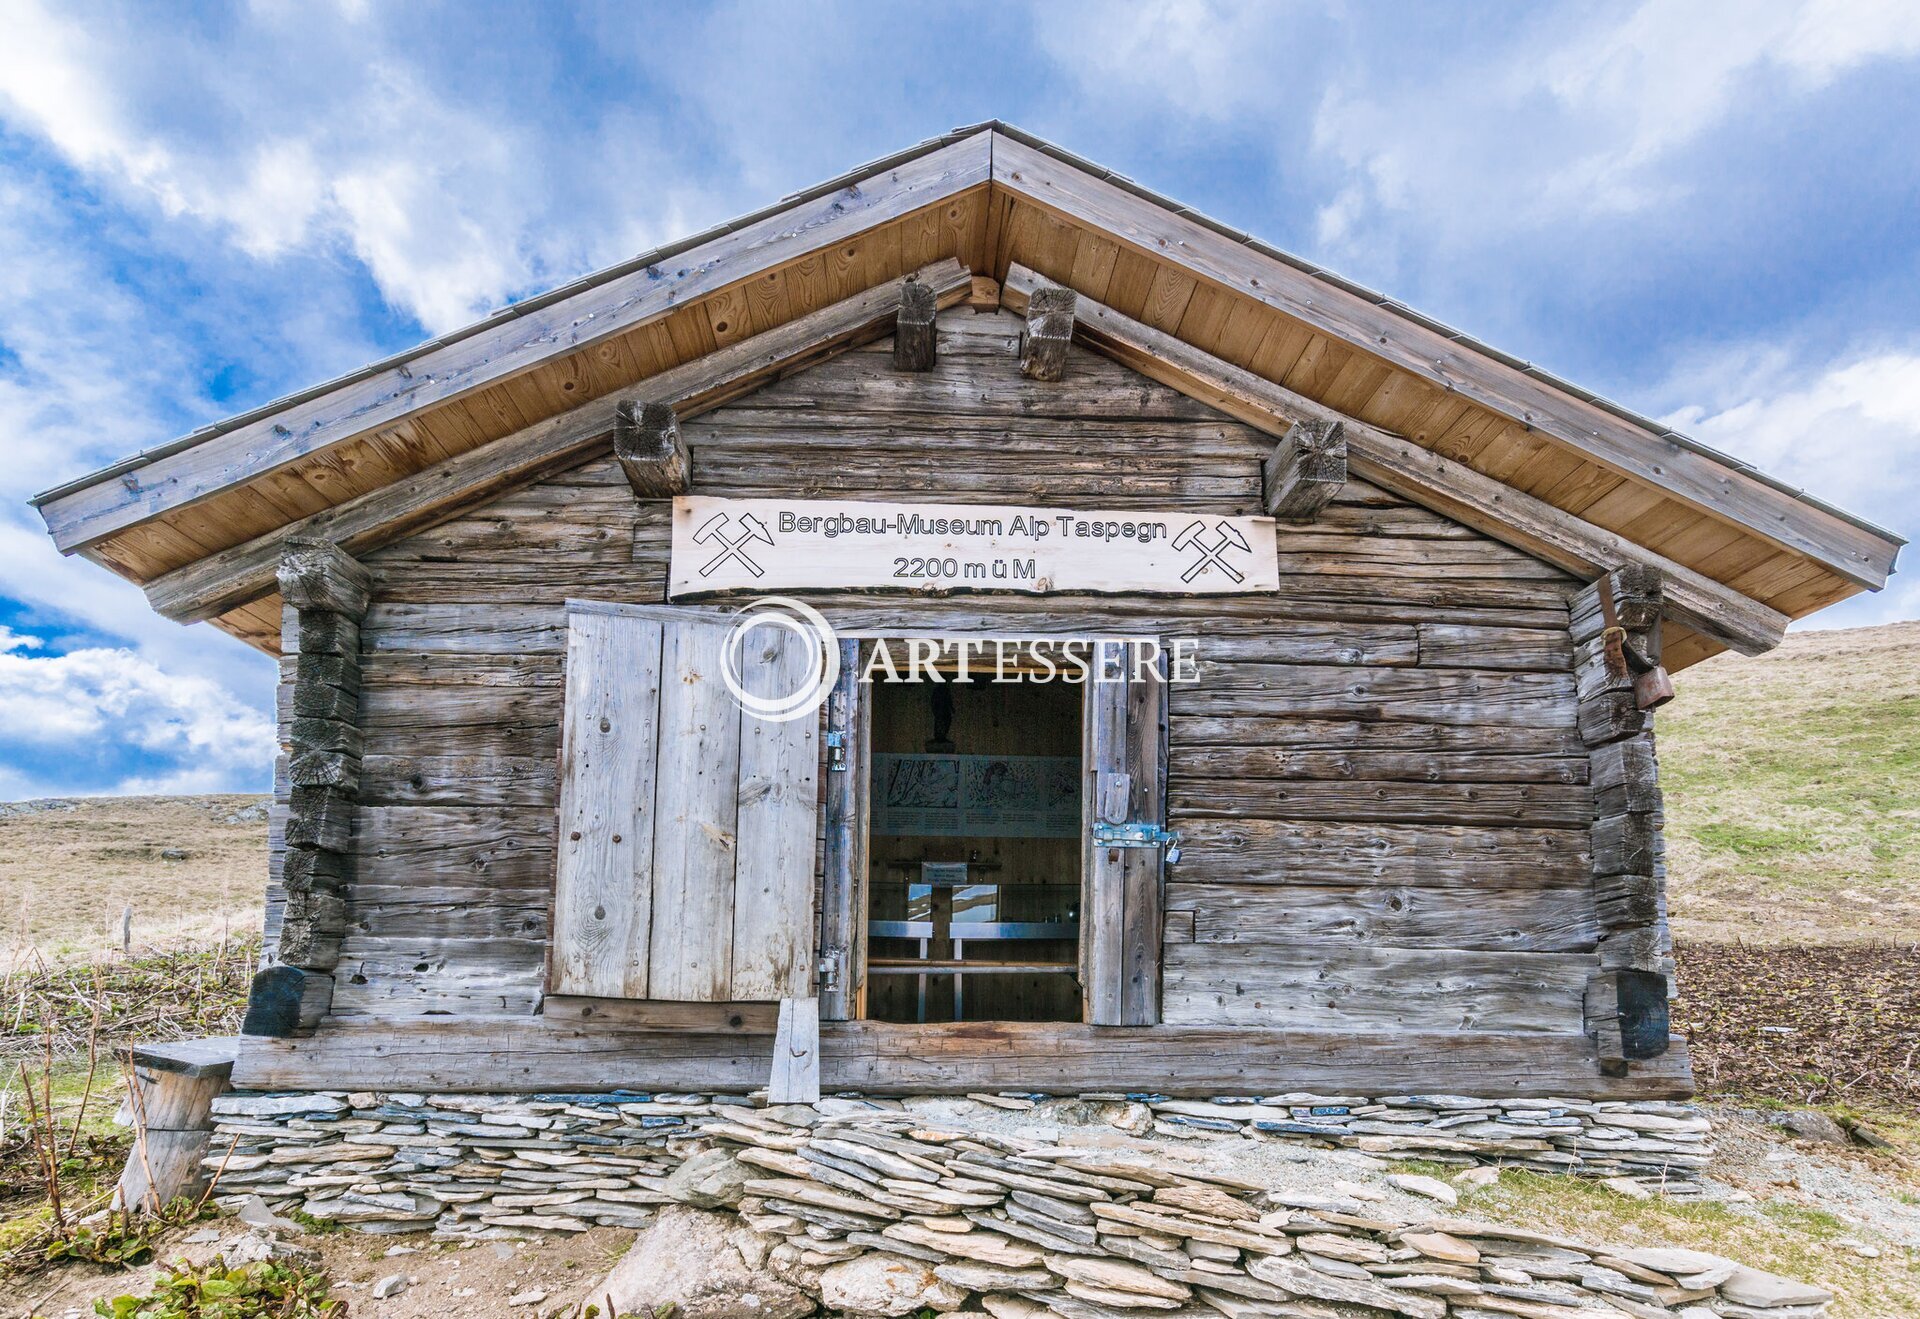 Bergbaumuseum Alp Taspin